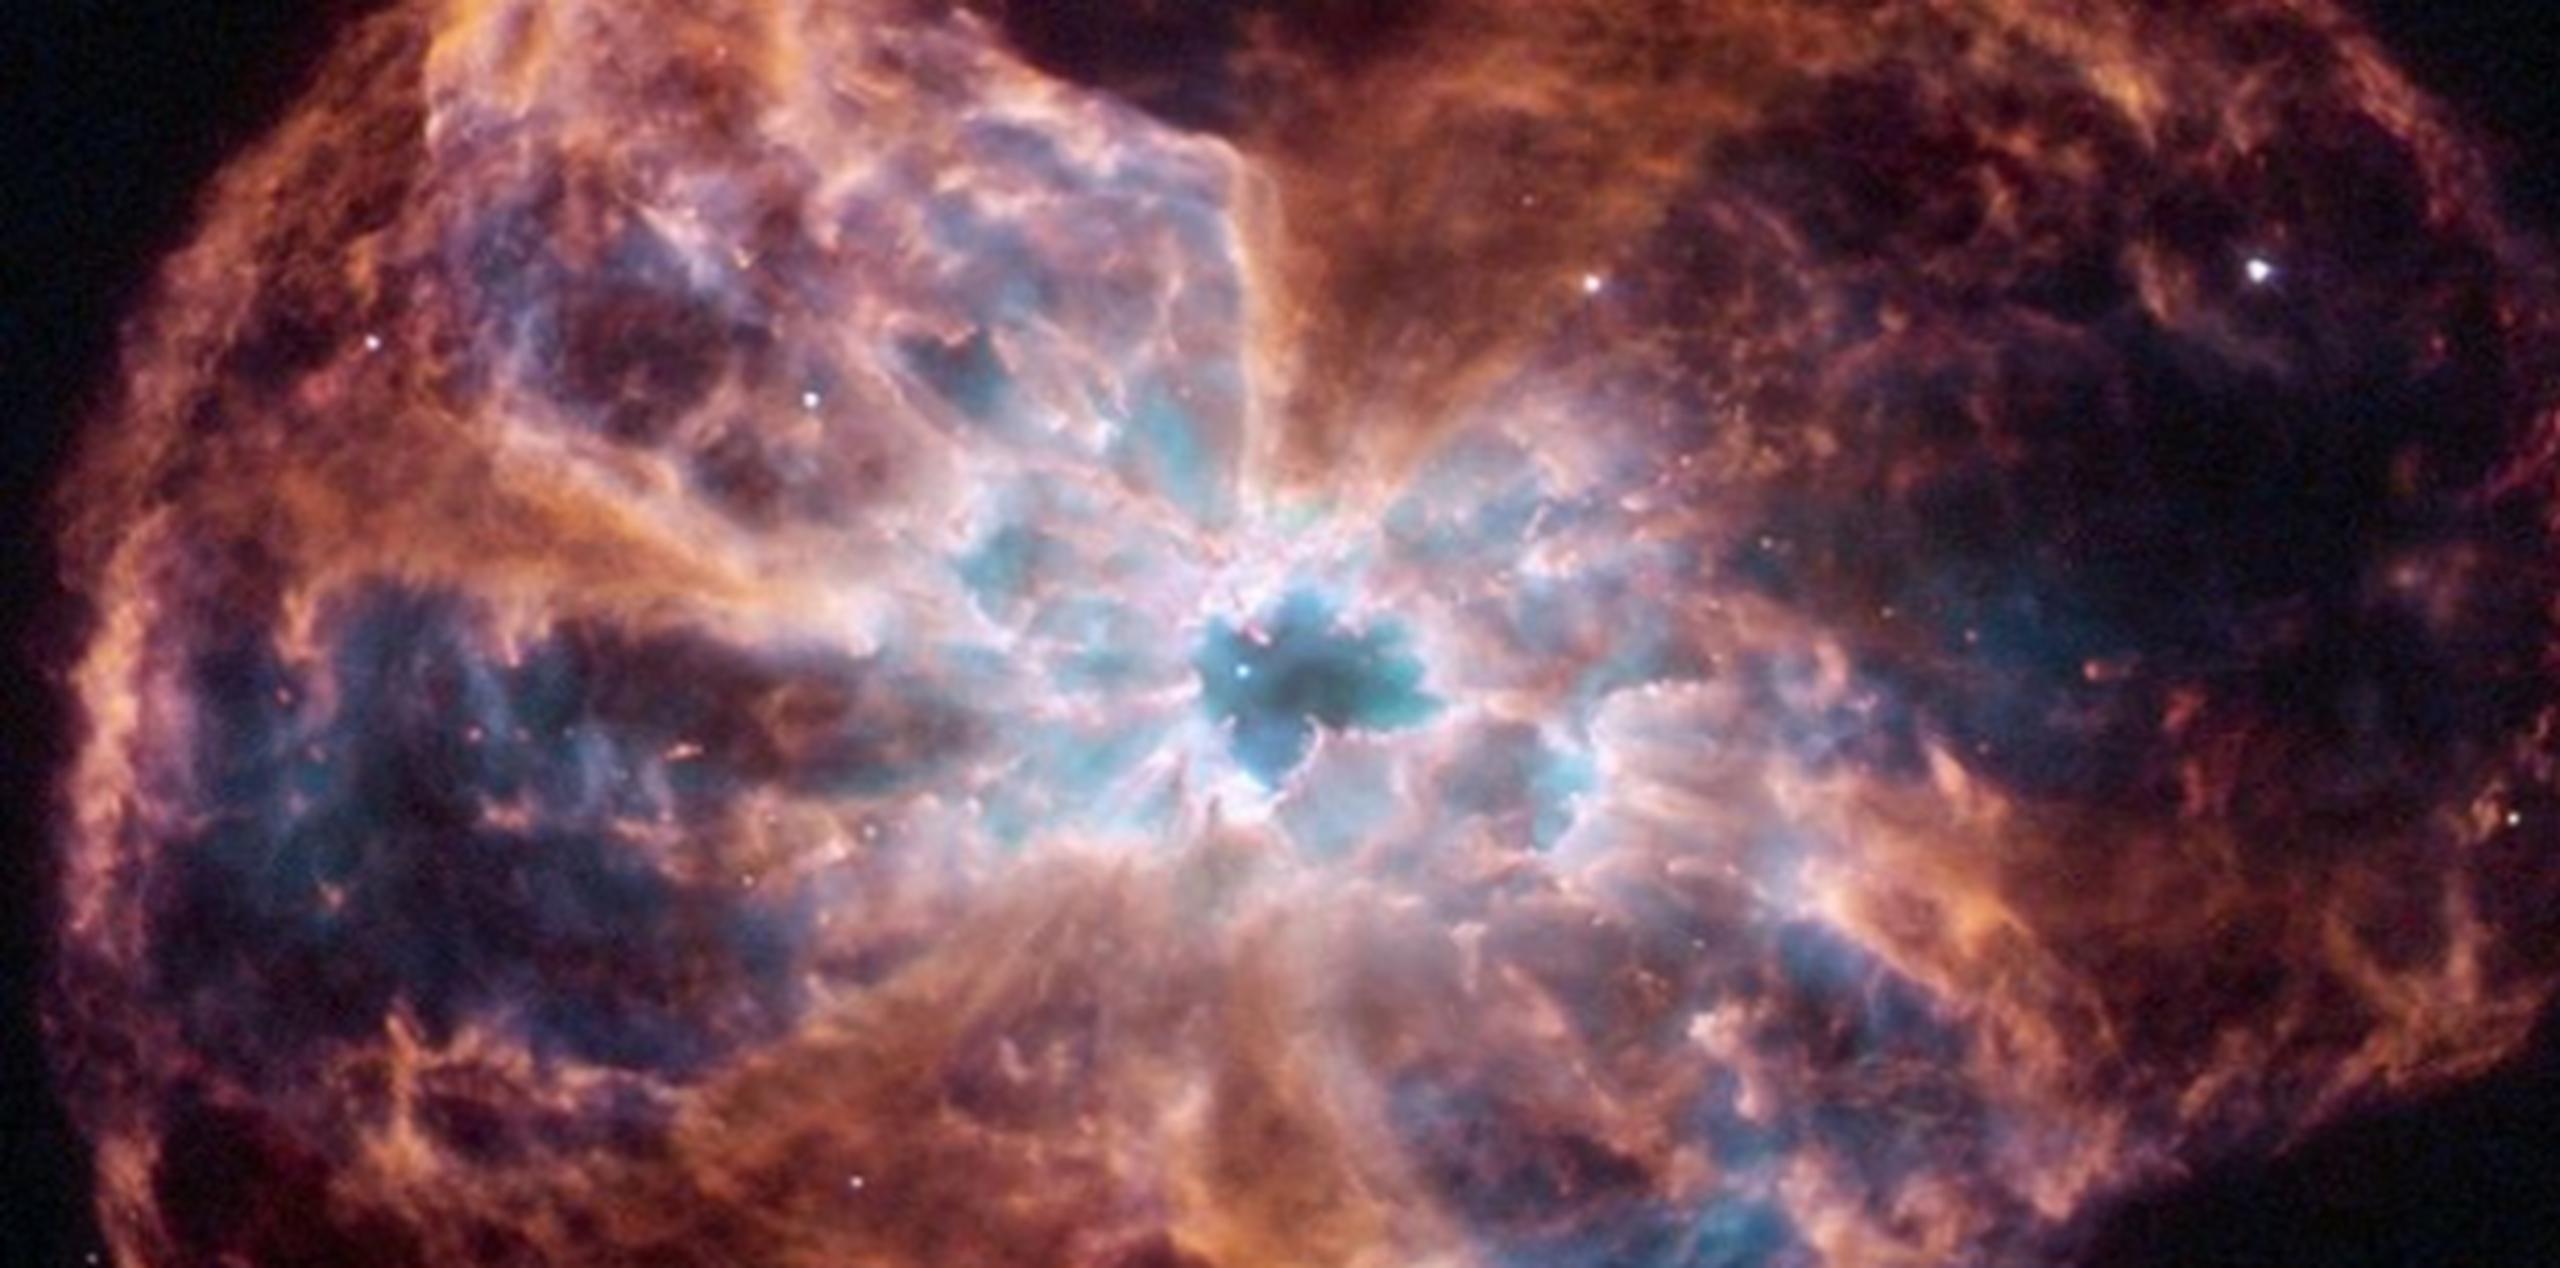 El punto blanco que se ve al centro de la imagen es la estrella quemada. (NASA)